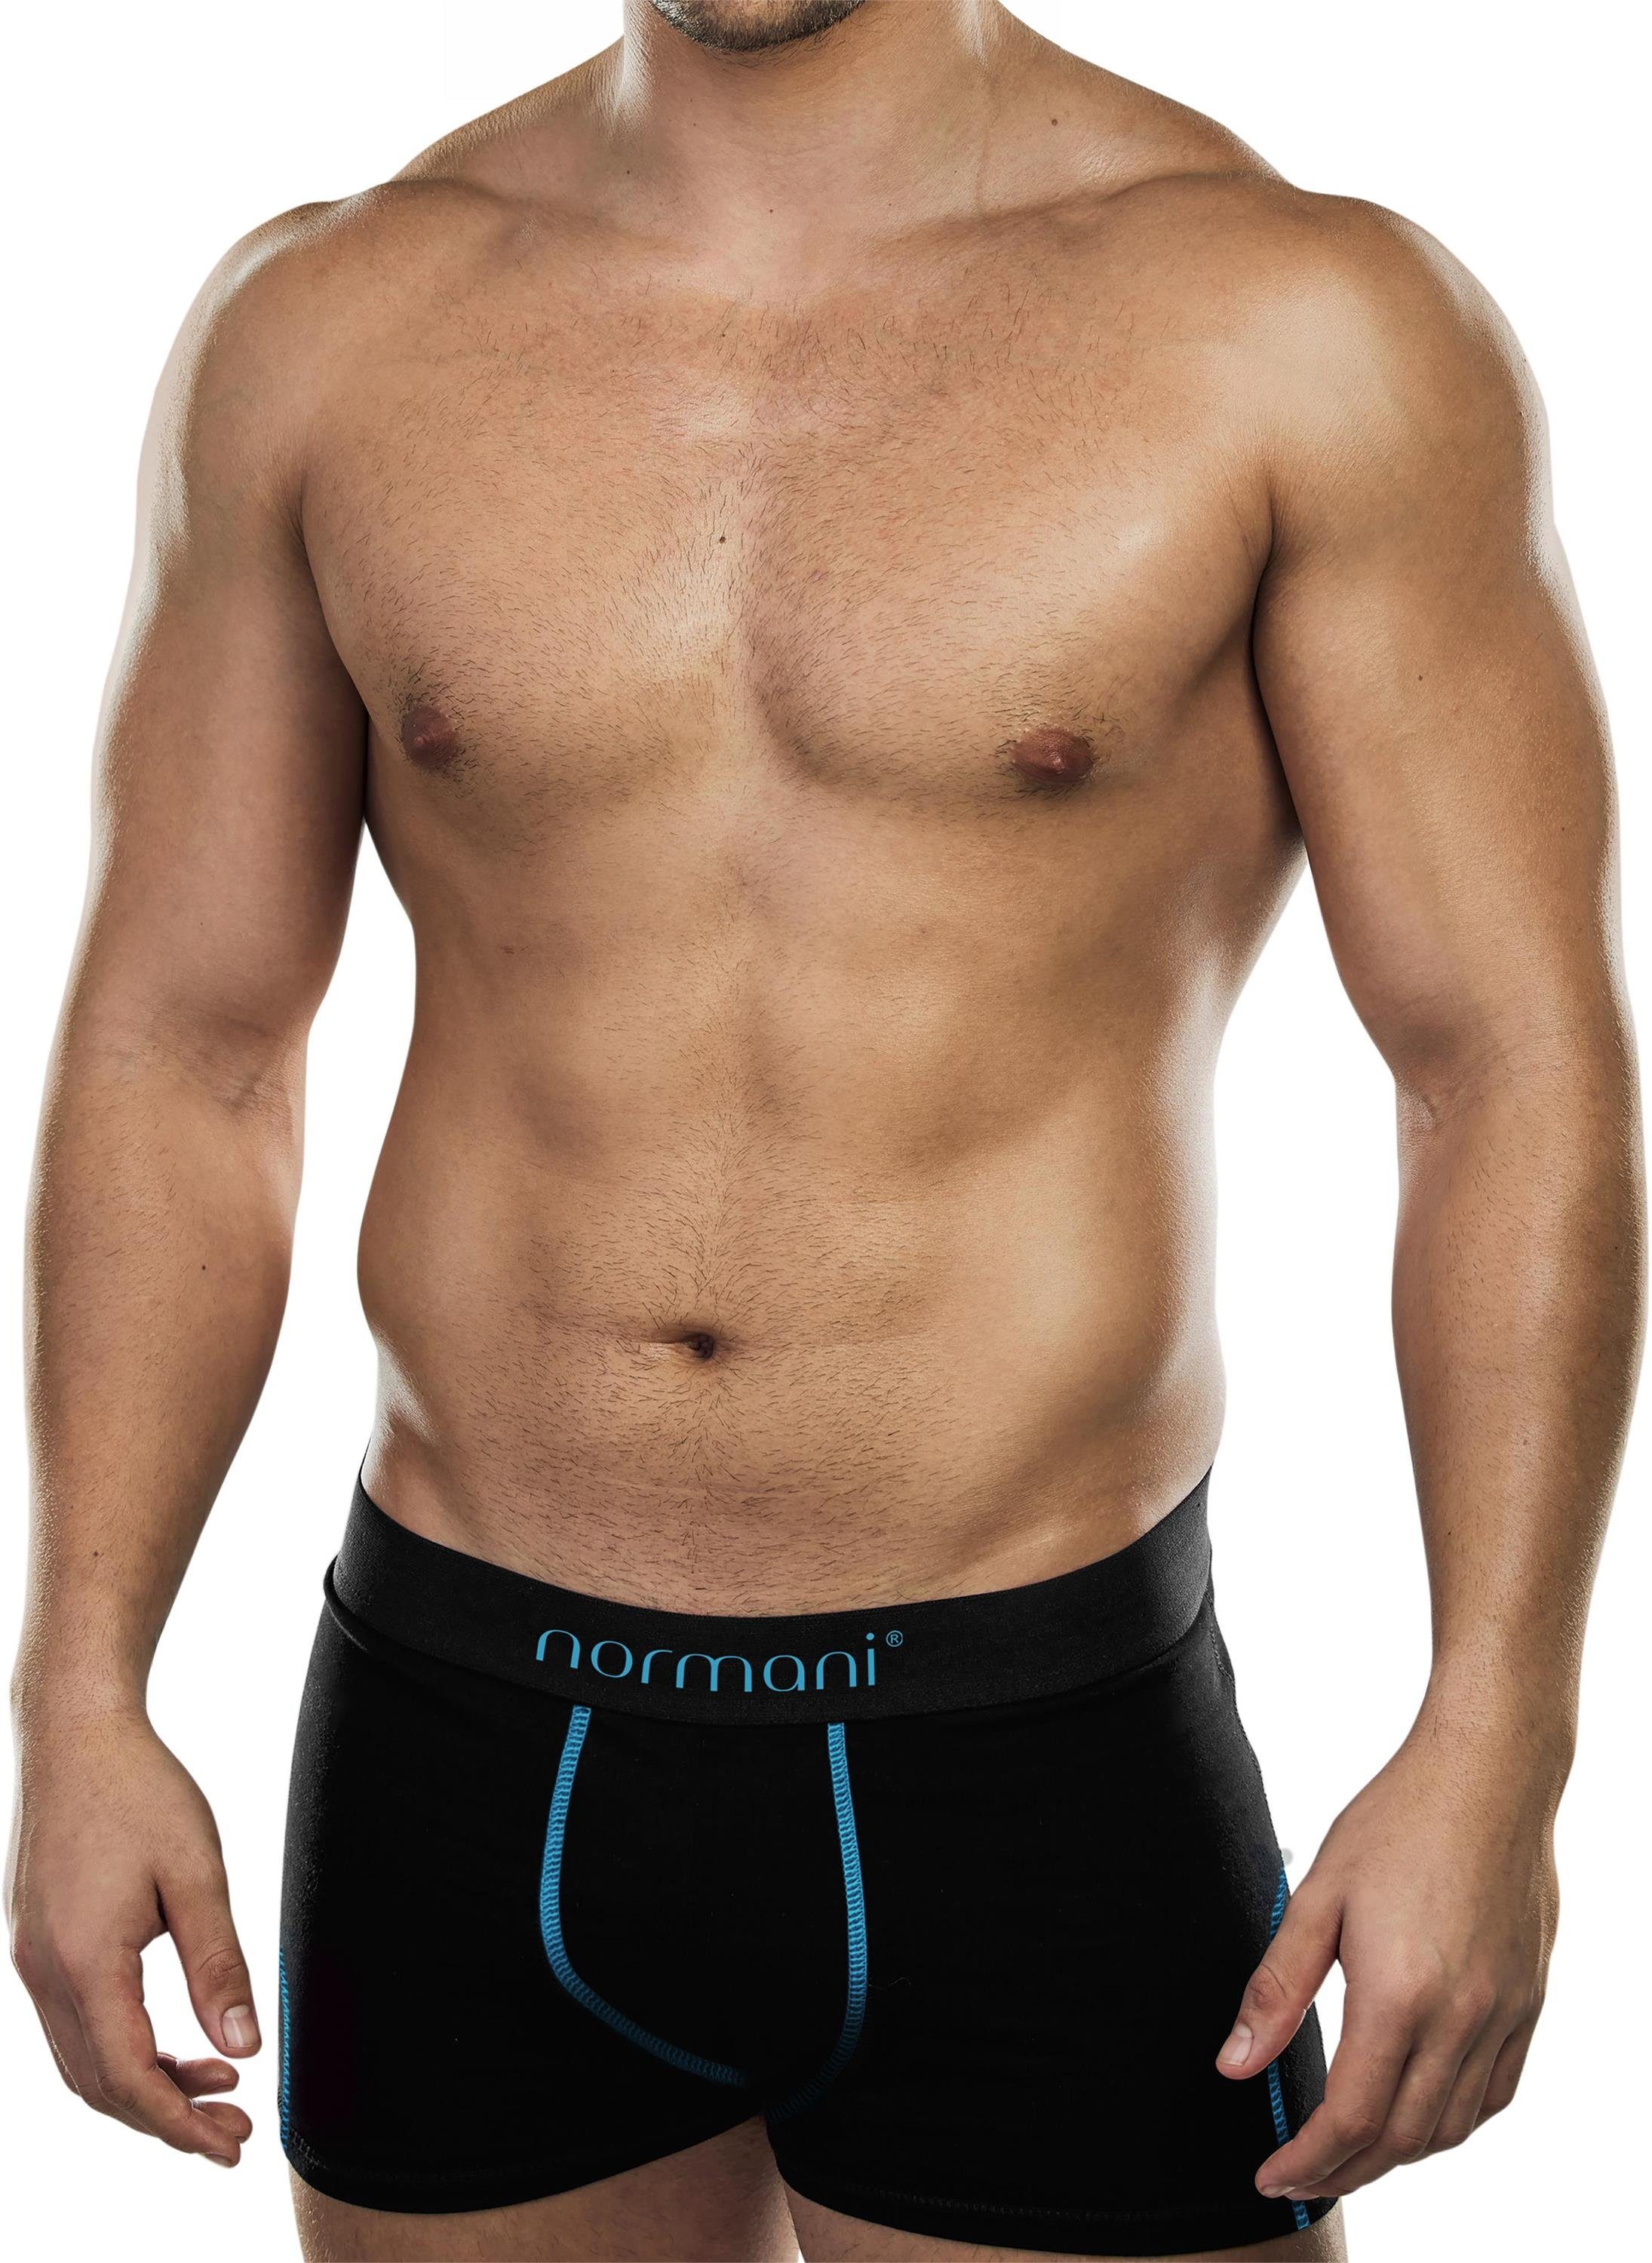 normani Boxershorts 6 weiche Boxershorts aus Baumwolle Unterhose aus atmungsaktiver Baumwolle für Männer Türkis